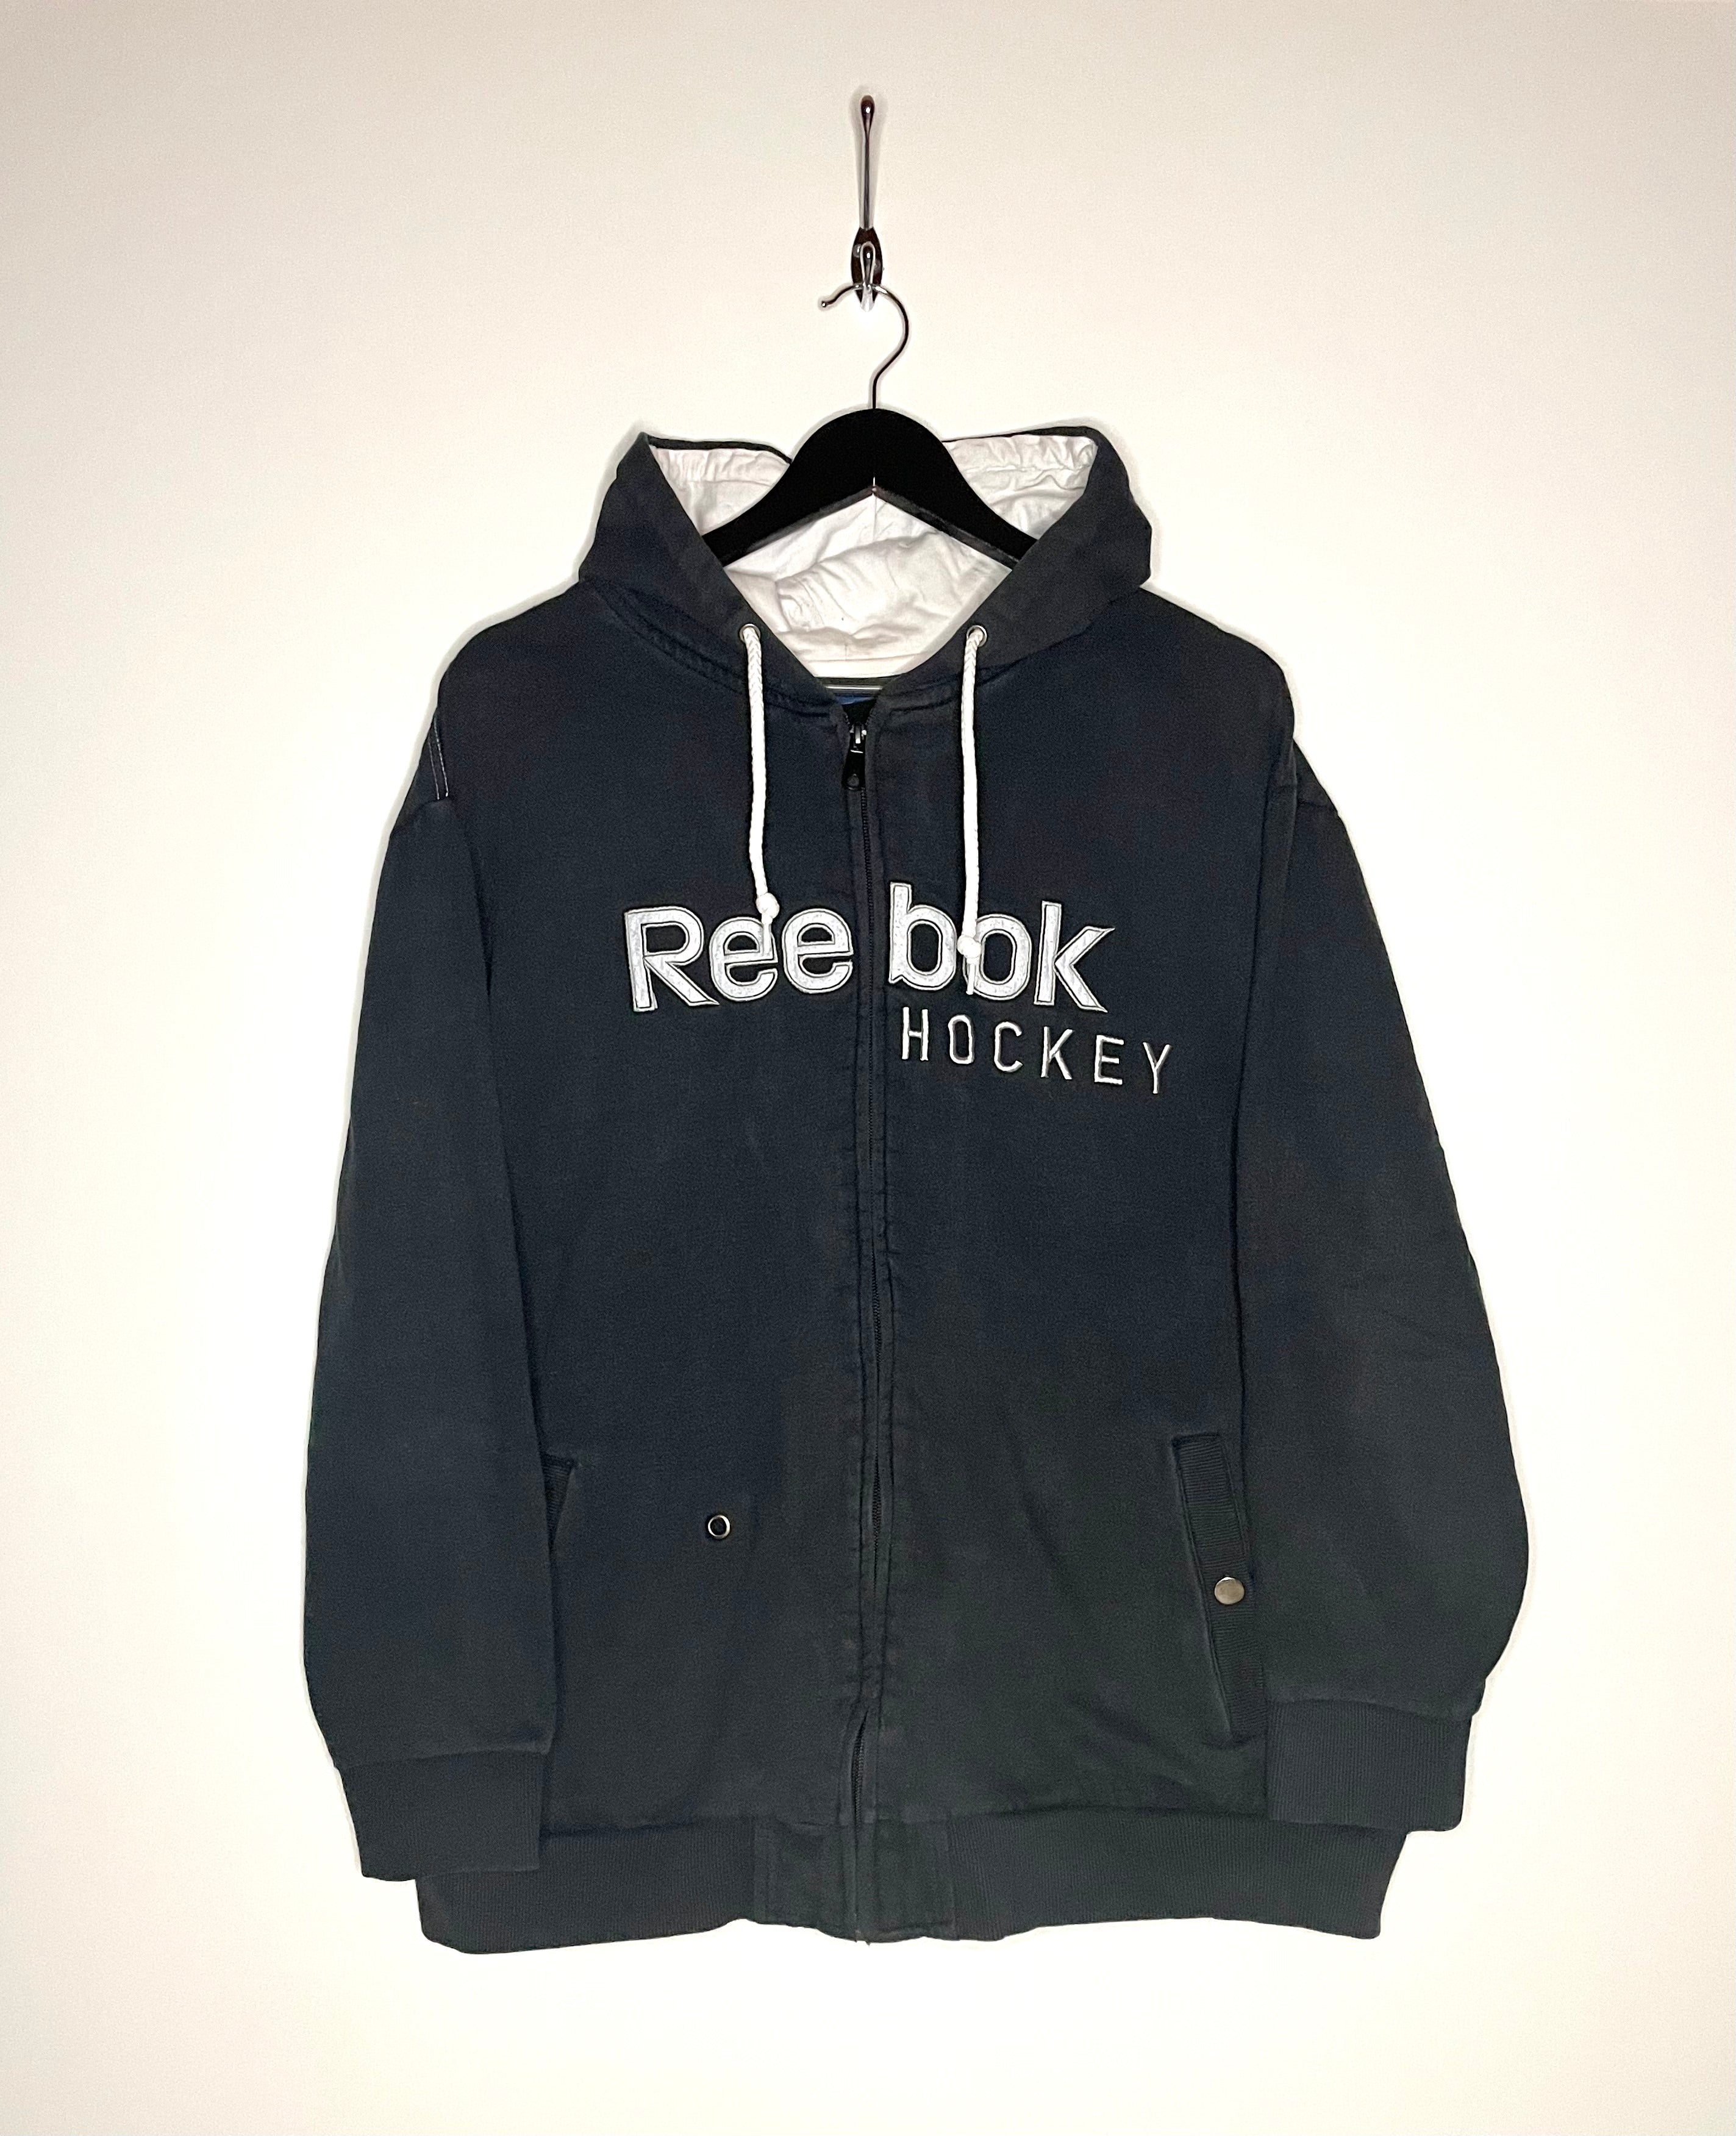 Reebok Hockey Vintage bordado Zip sudadera con capucha azul oscuro tamaño XL 